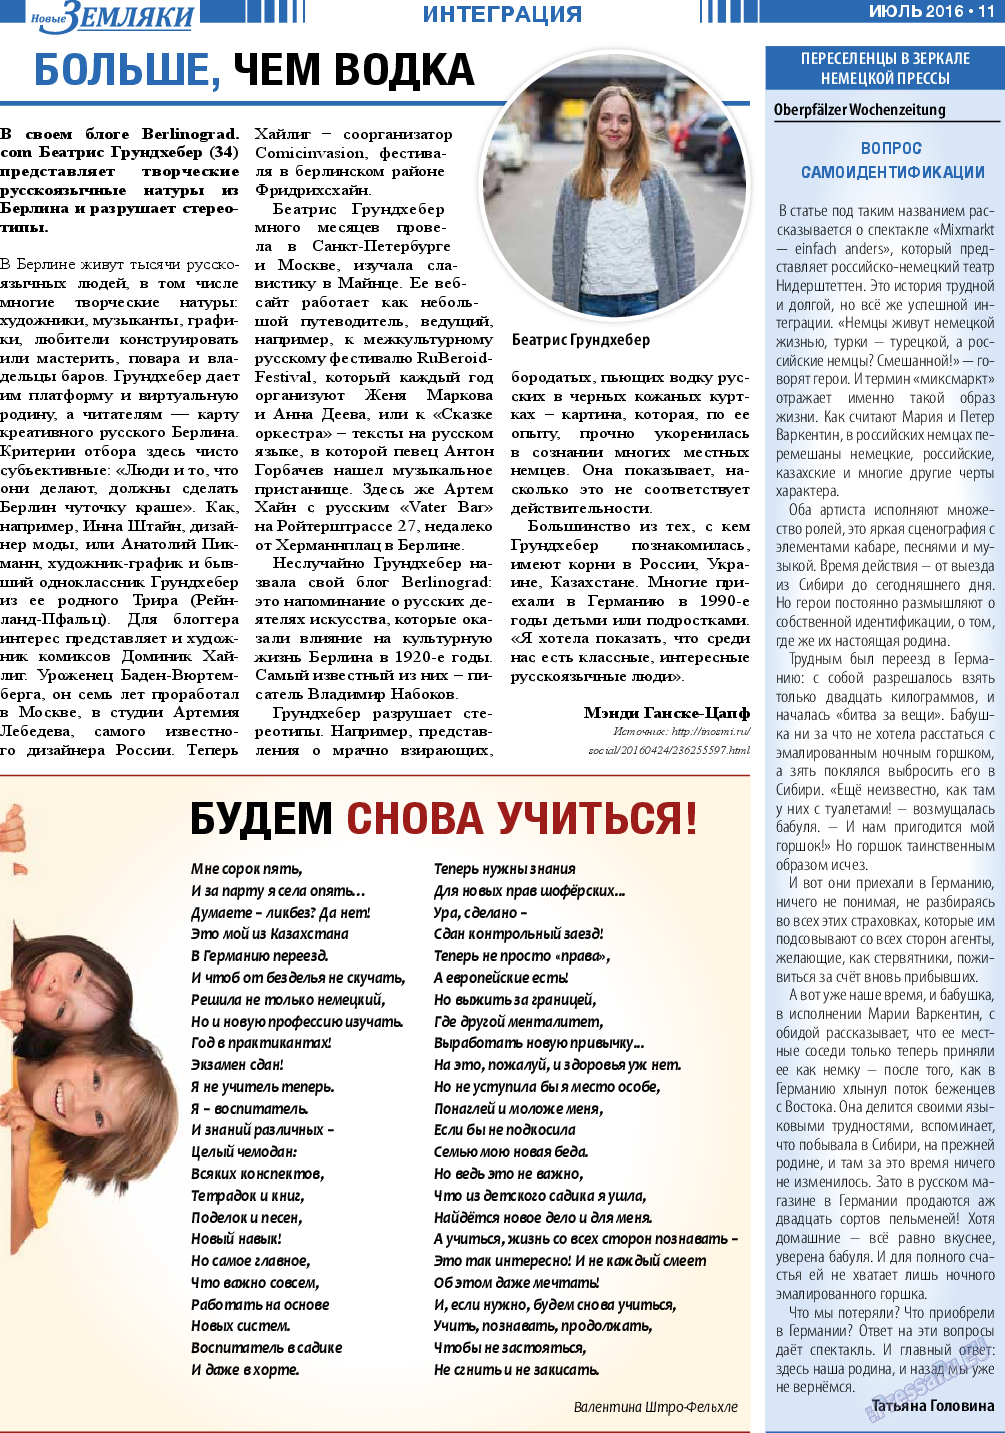 Новые Земляки (газета). 2016 год, номер 7, стр. 11